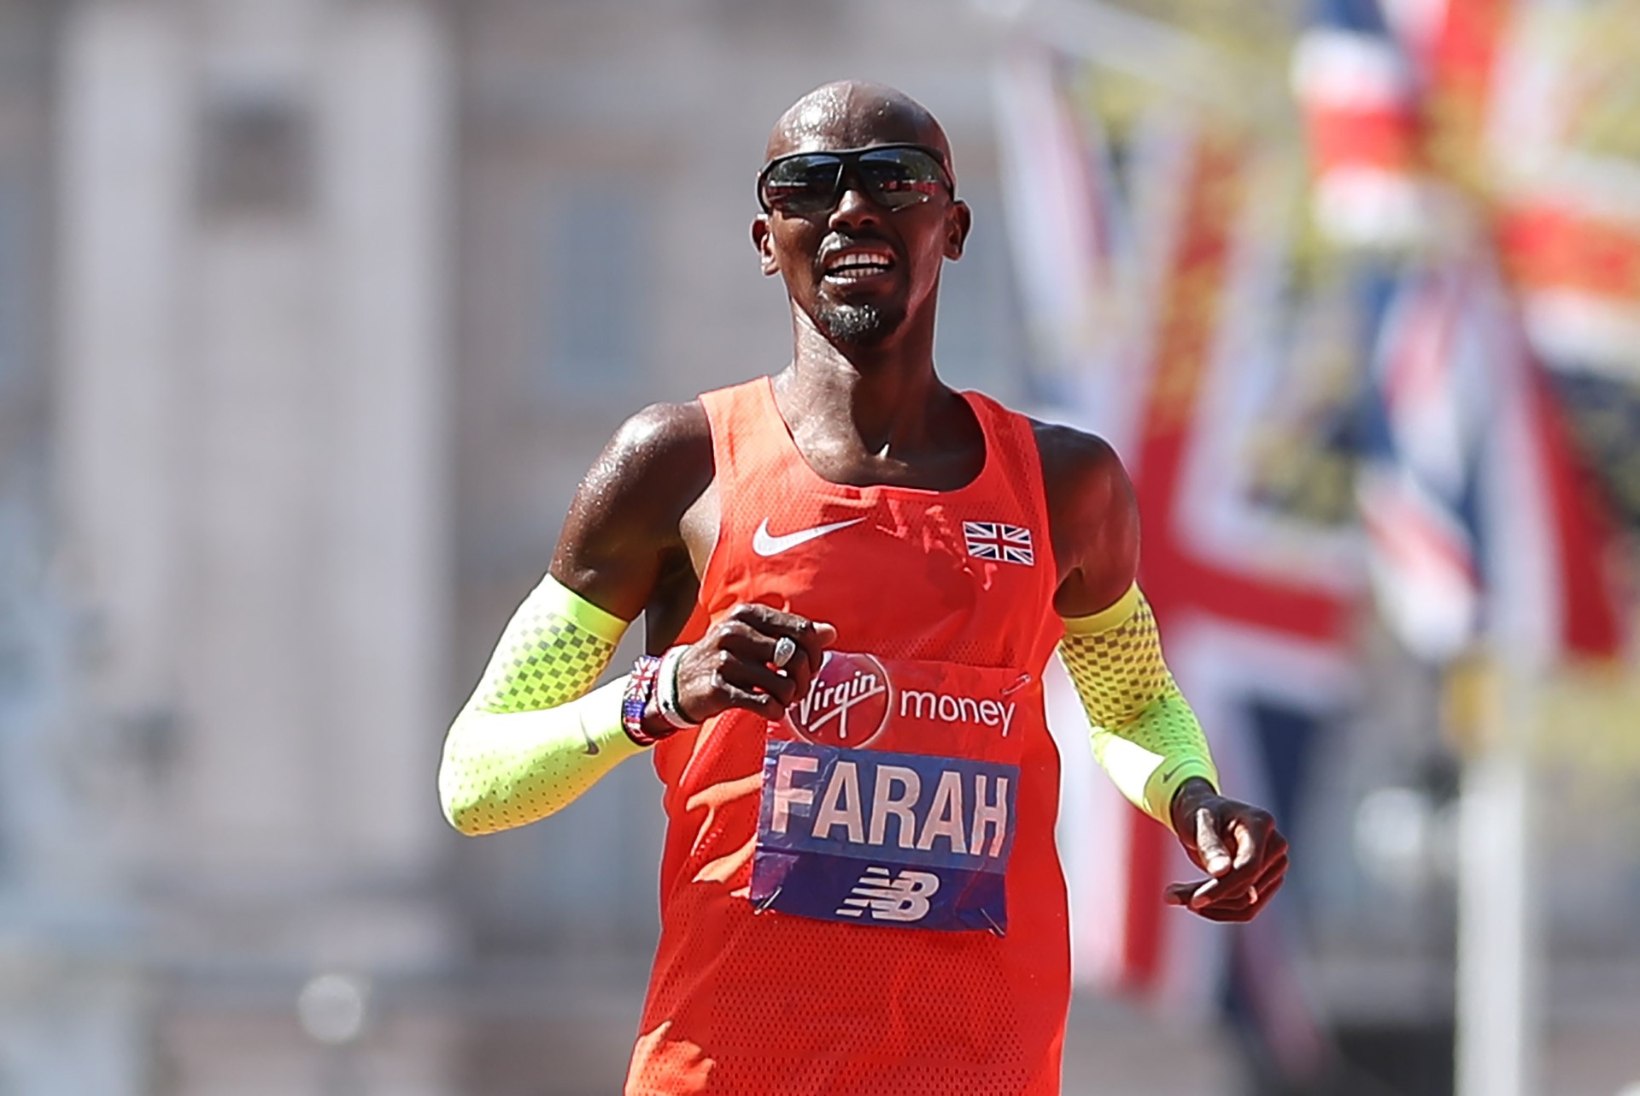 Londoni maratonil triumfeerivad jätkuvalt keenialased, Farah vandus Euroopa rekordile napilt alla